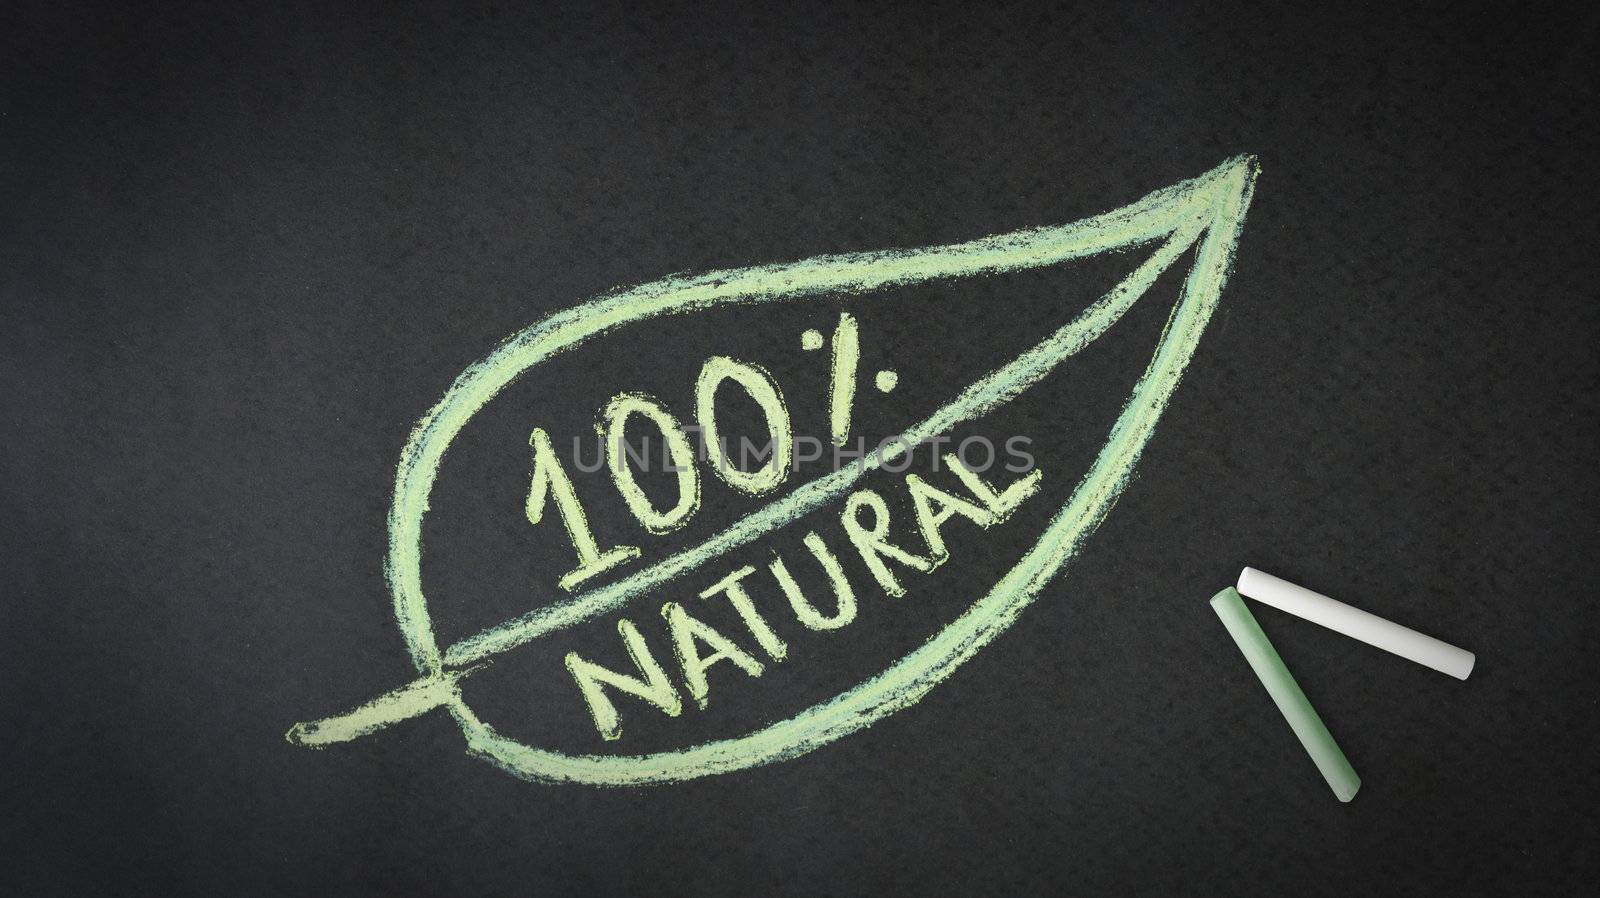 100 Percent Natural by kbuntu